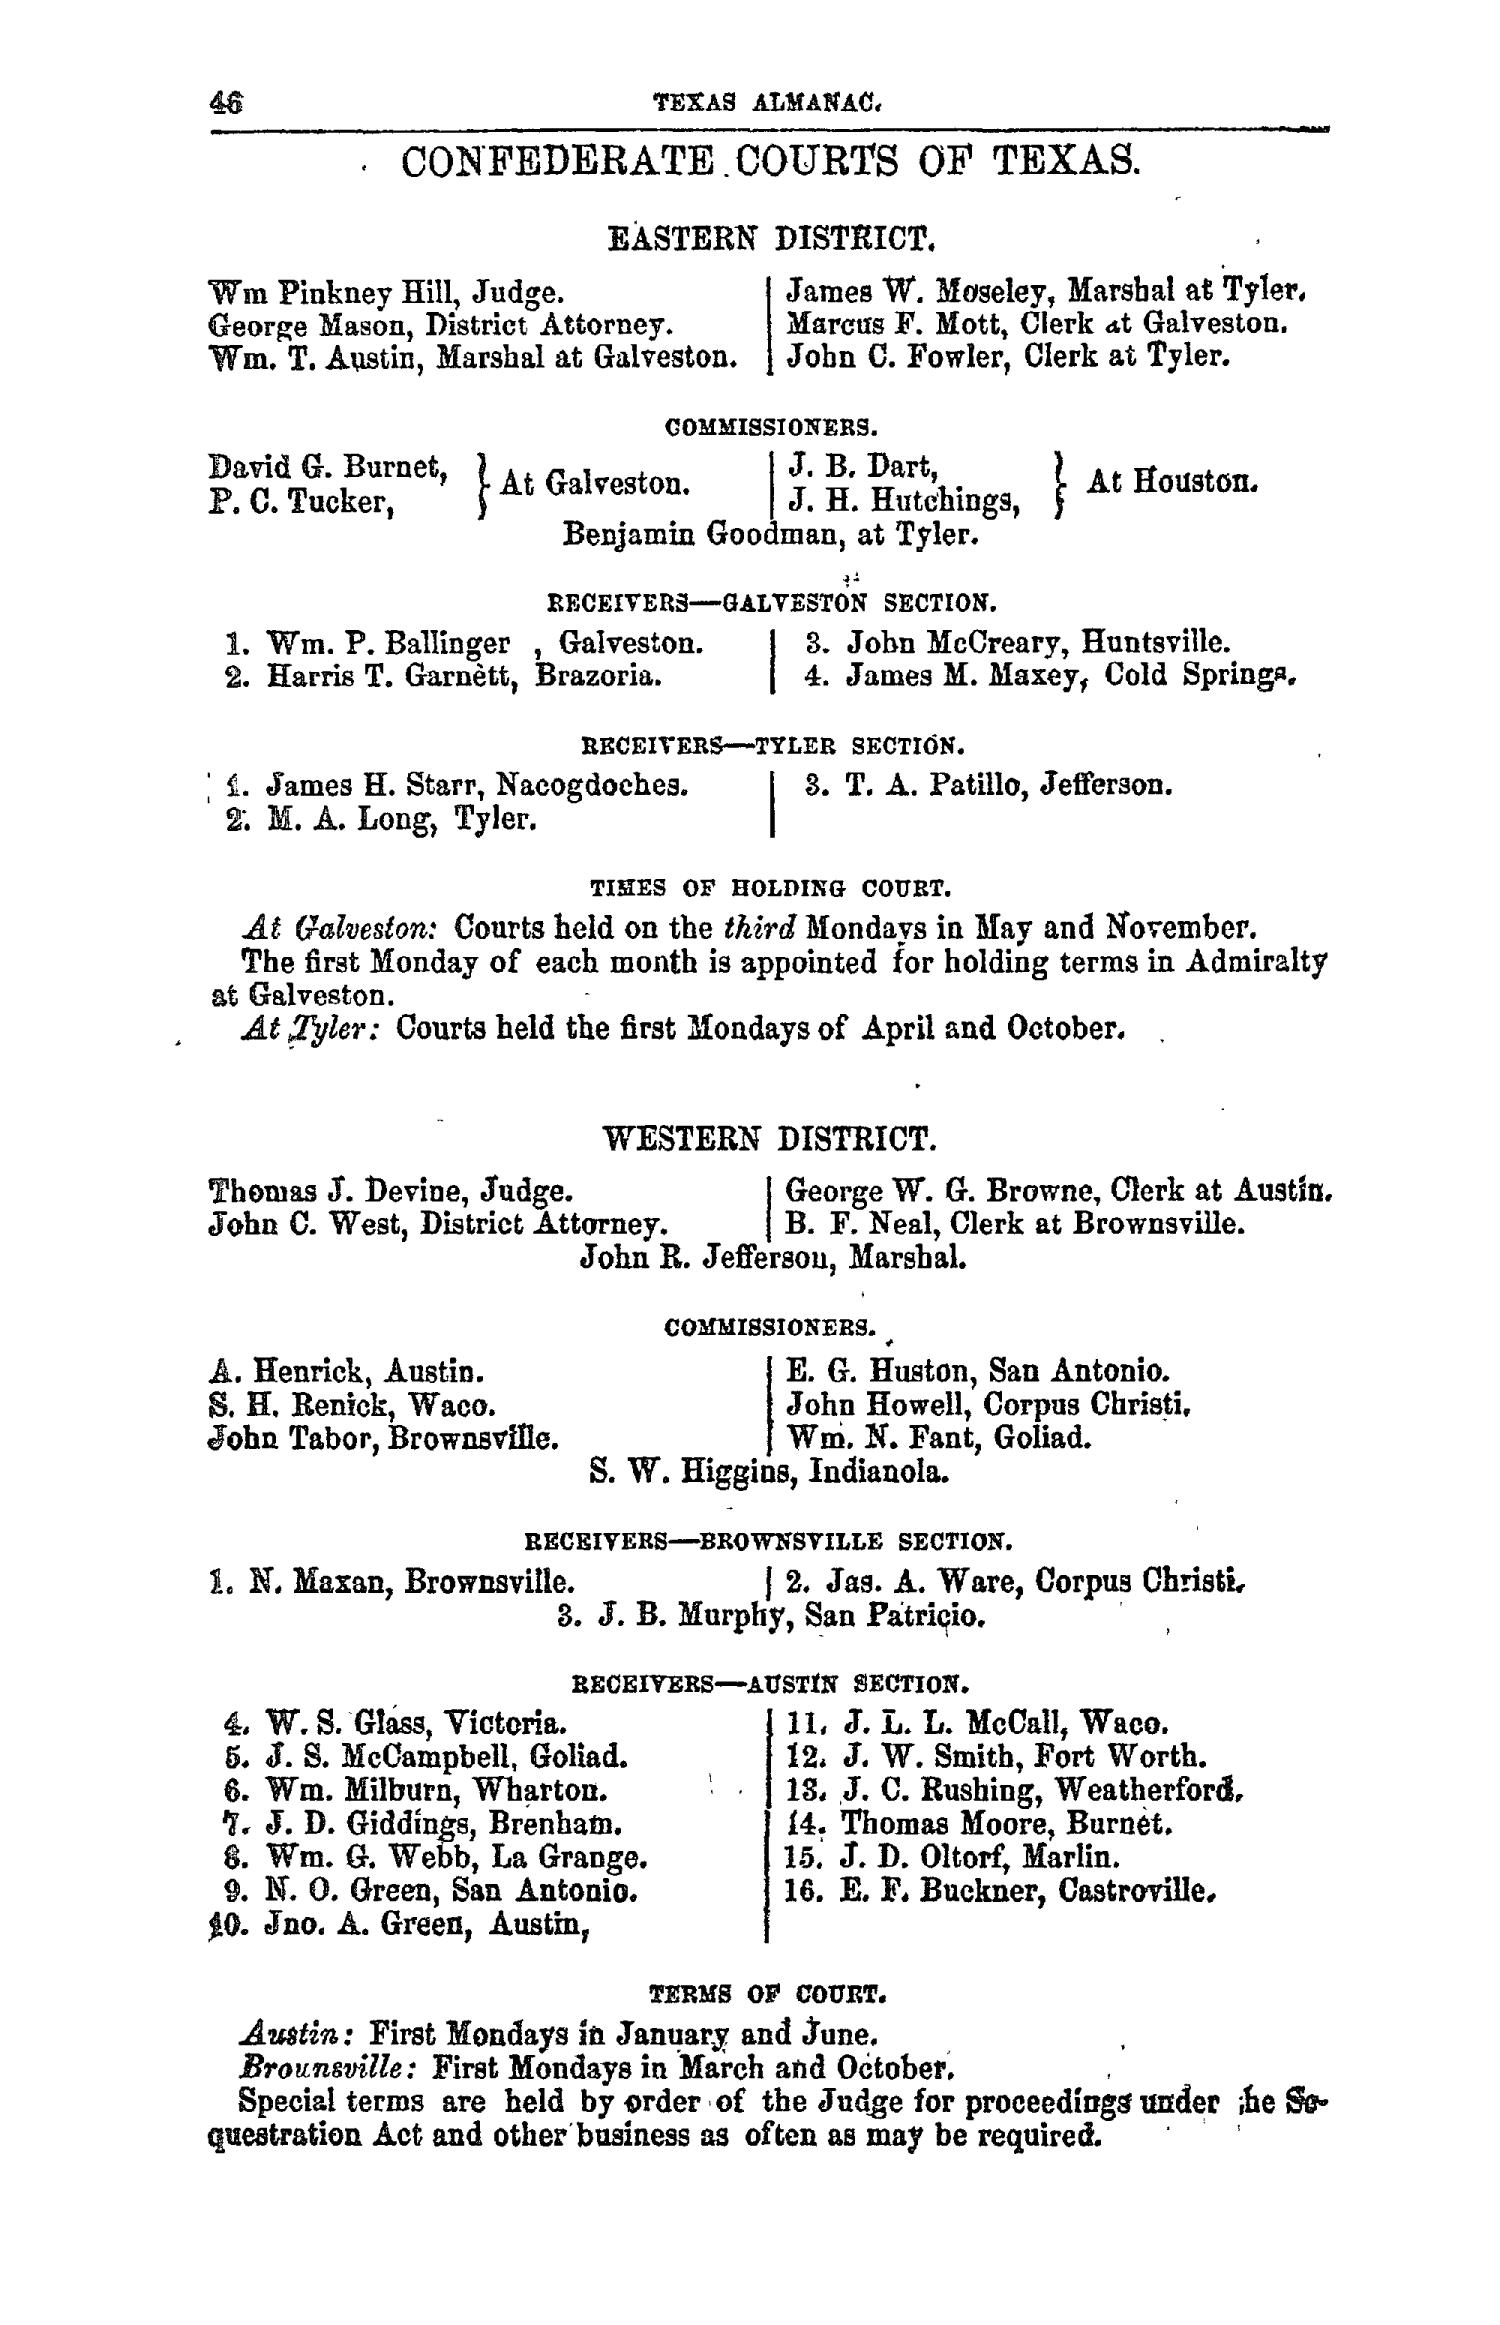 The Texas Almanac for 1863
                                                
                                                    46
                                                